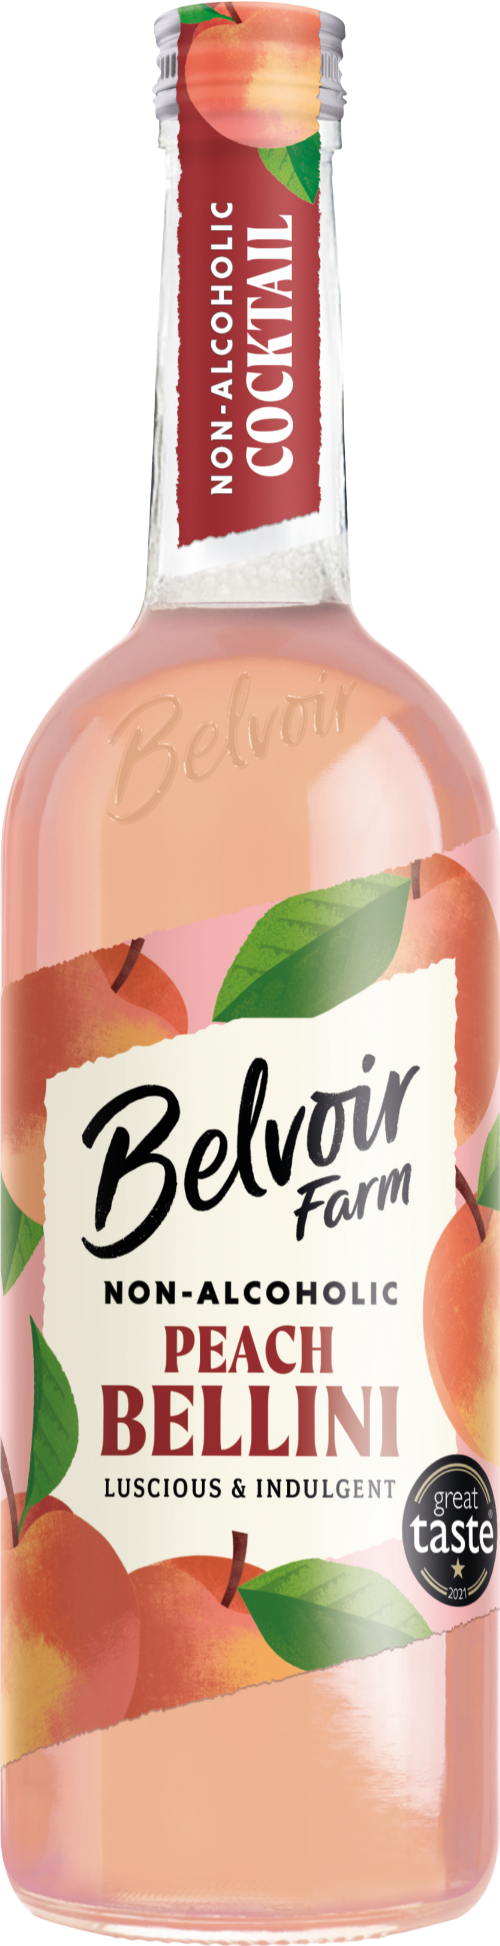 BELVOIR Non-Alcoholic Peach Bellini 75cl